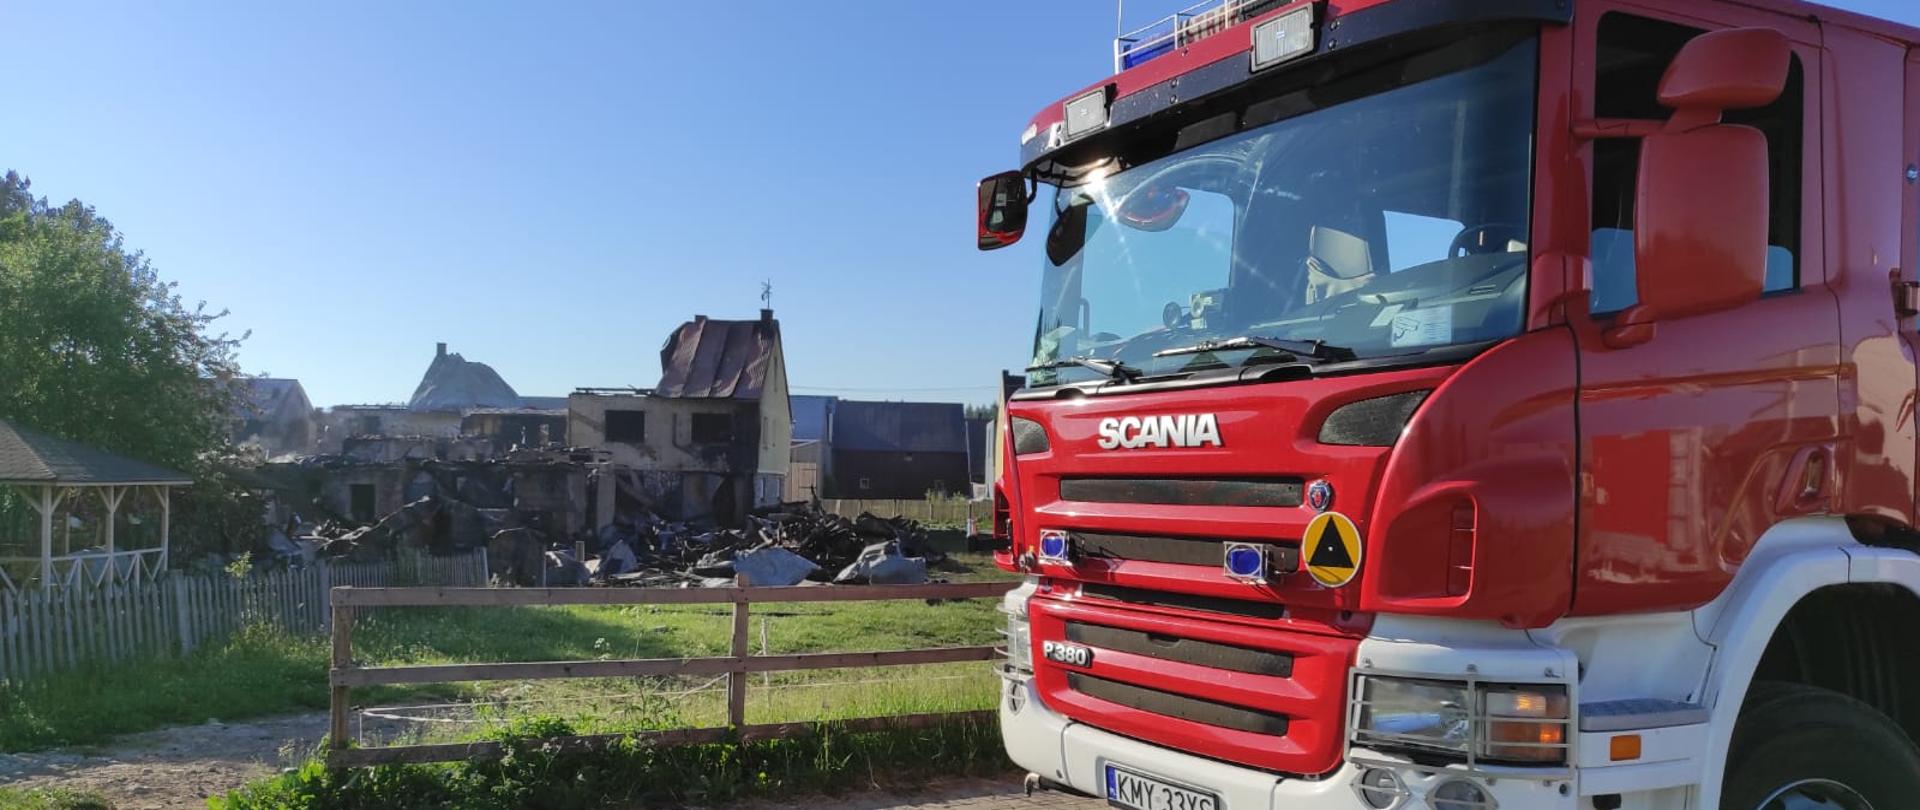 Zdjęcie przedstawia zniszczone w wyniku pożaru zabudowania mieszkalne i gospodarcze w miejscowości Nowa Biała. Po prawej stronie stoi samochód strażacki z JRG Myślenice